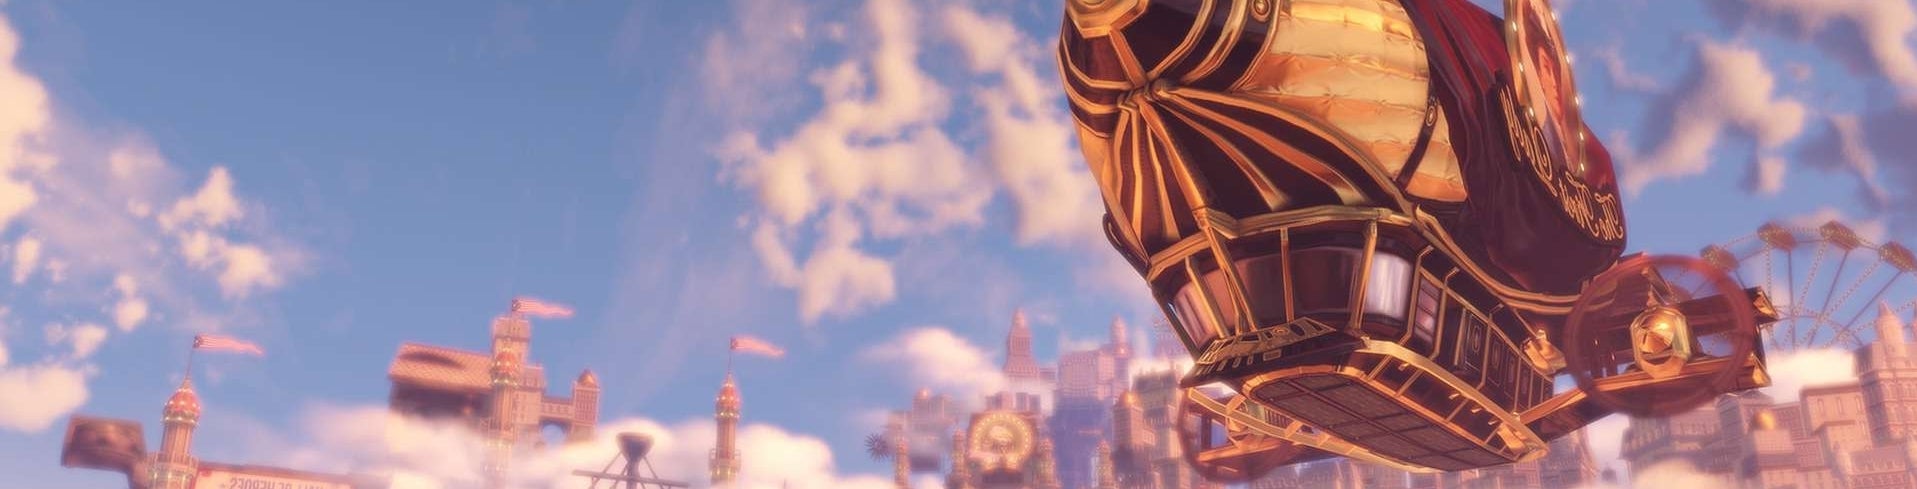 Immagine di BioShock Infinite: Scontro tra le nuvole - review